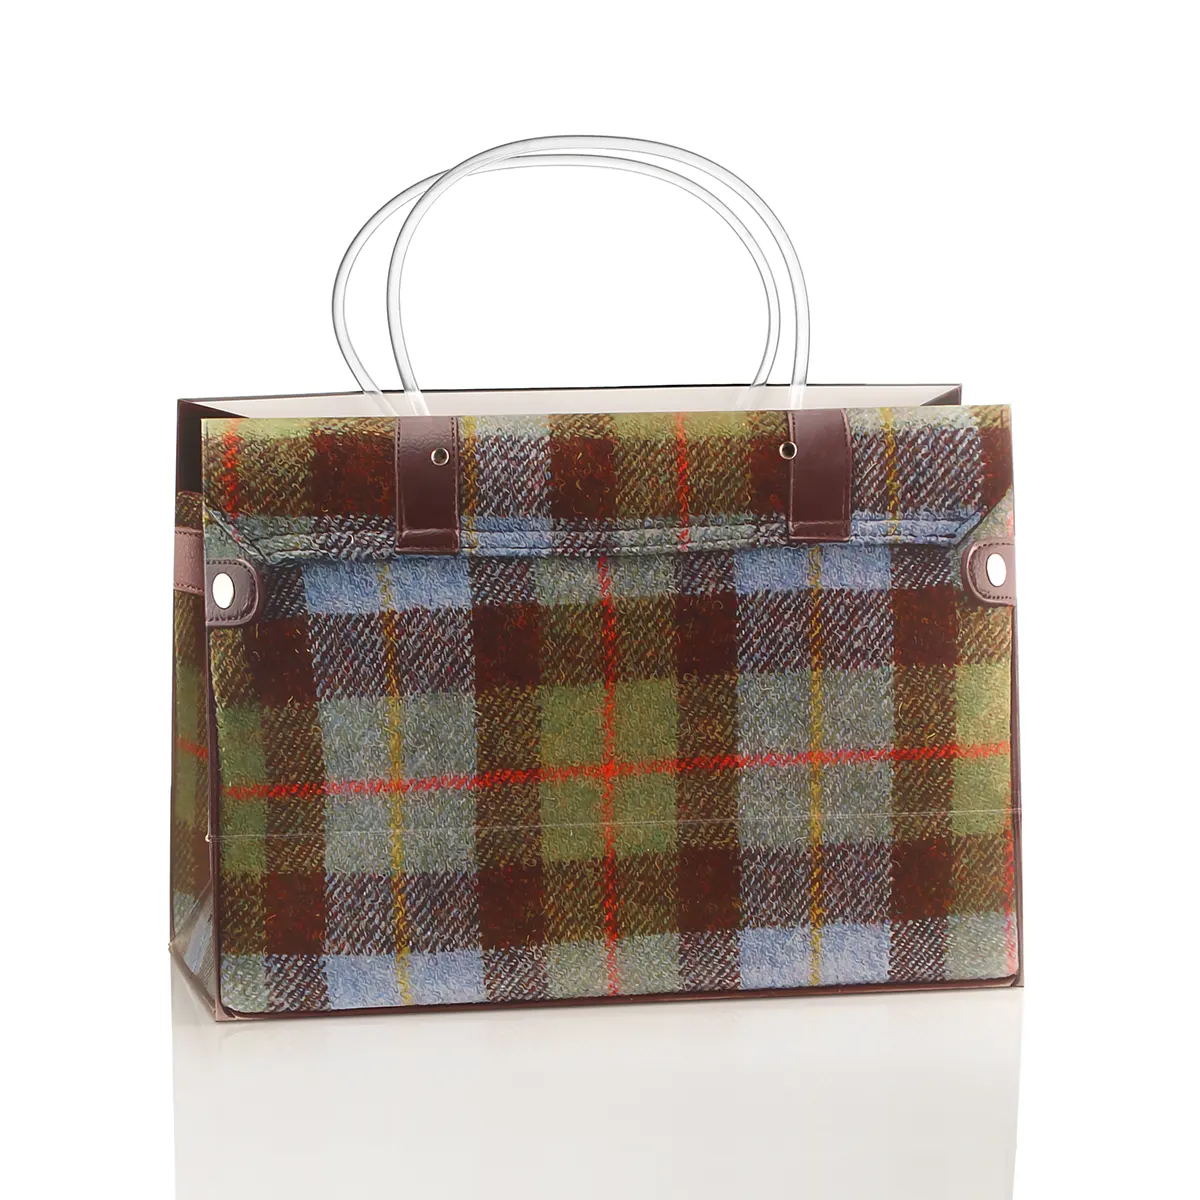 McLeod Tartan Shopping Bag - schottischer Karomuster Einkaufstasche aus Papier